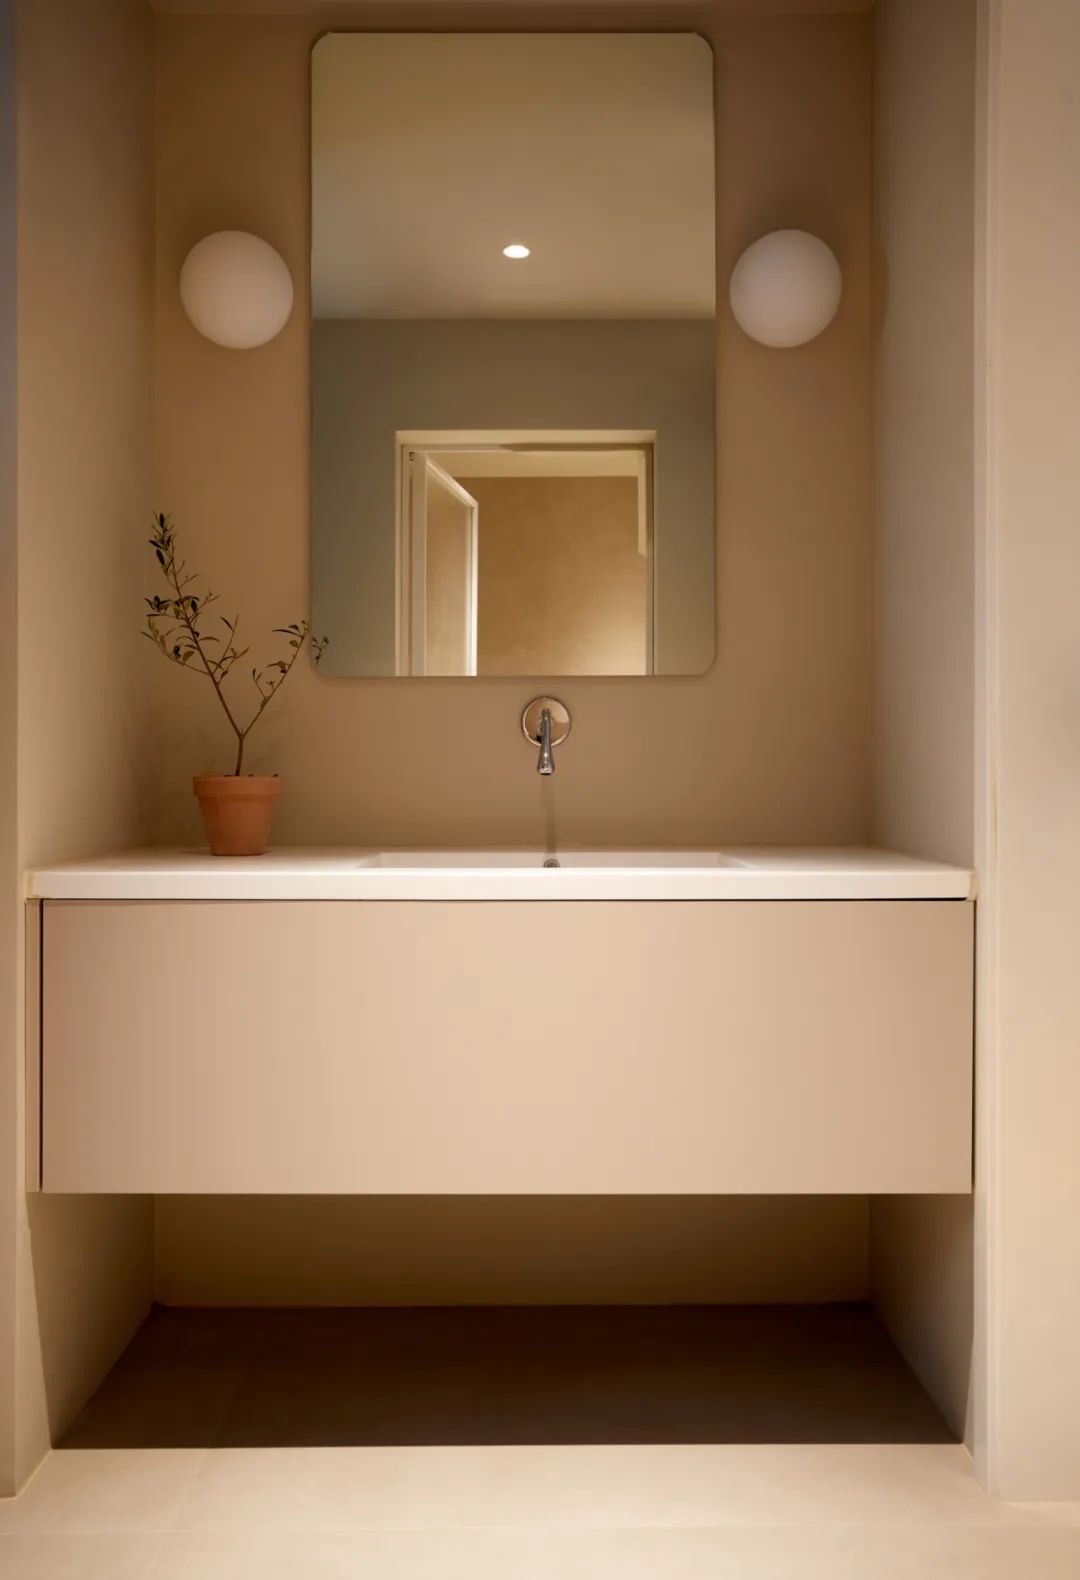 主卫内放了浴缸，所以把洗漱区外移至主卧过道区；入墙式水龙头、悬挂式台盆更显这个小空间的质感。